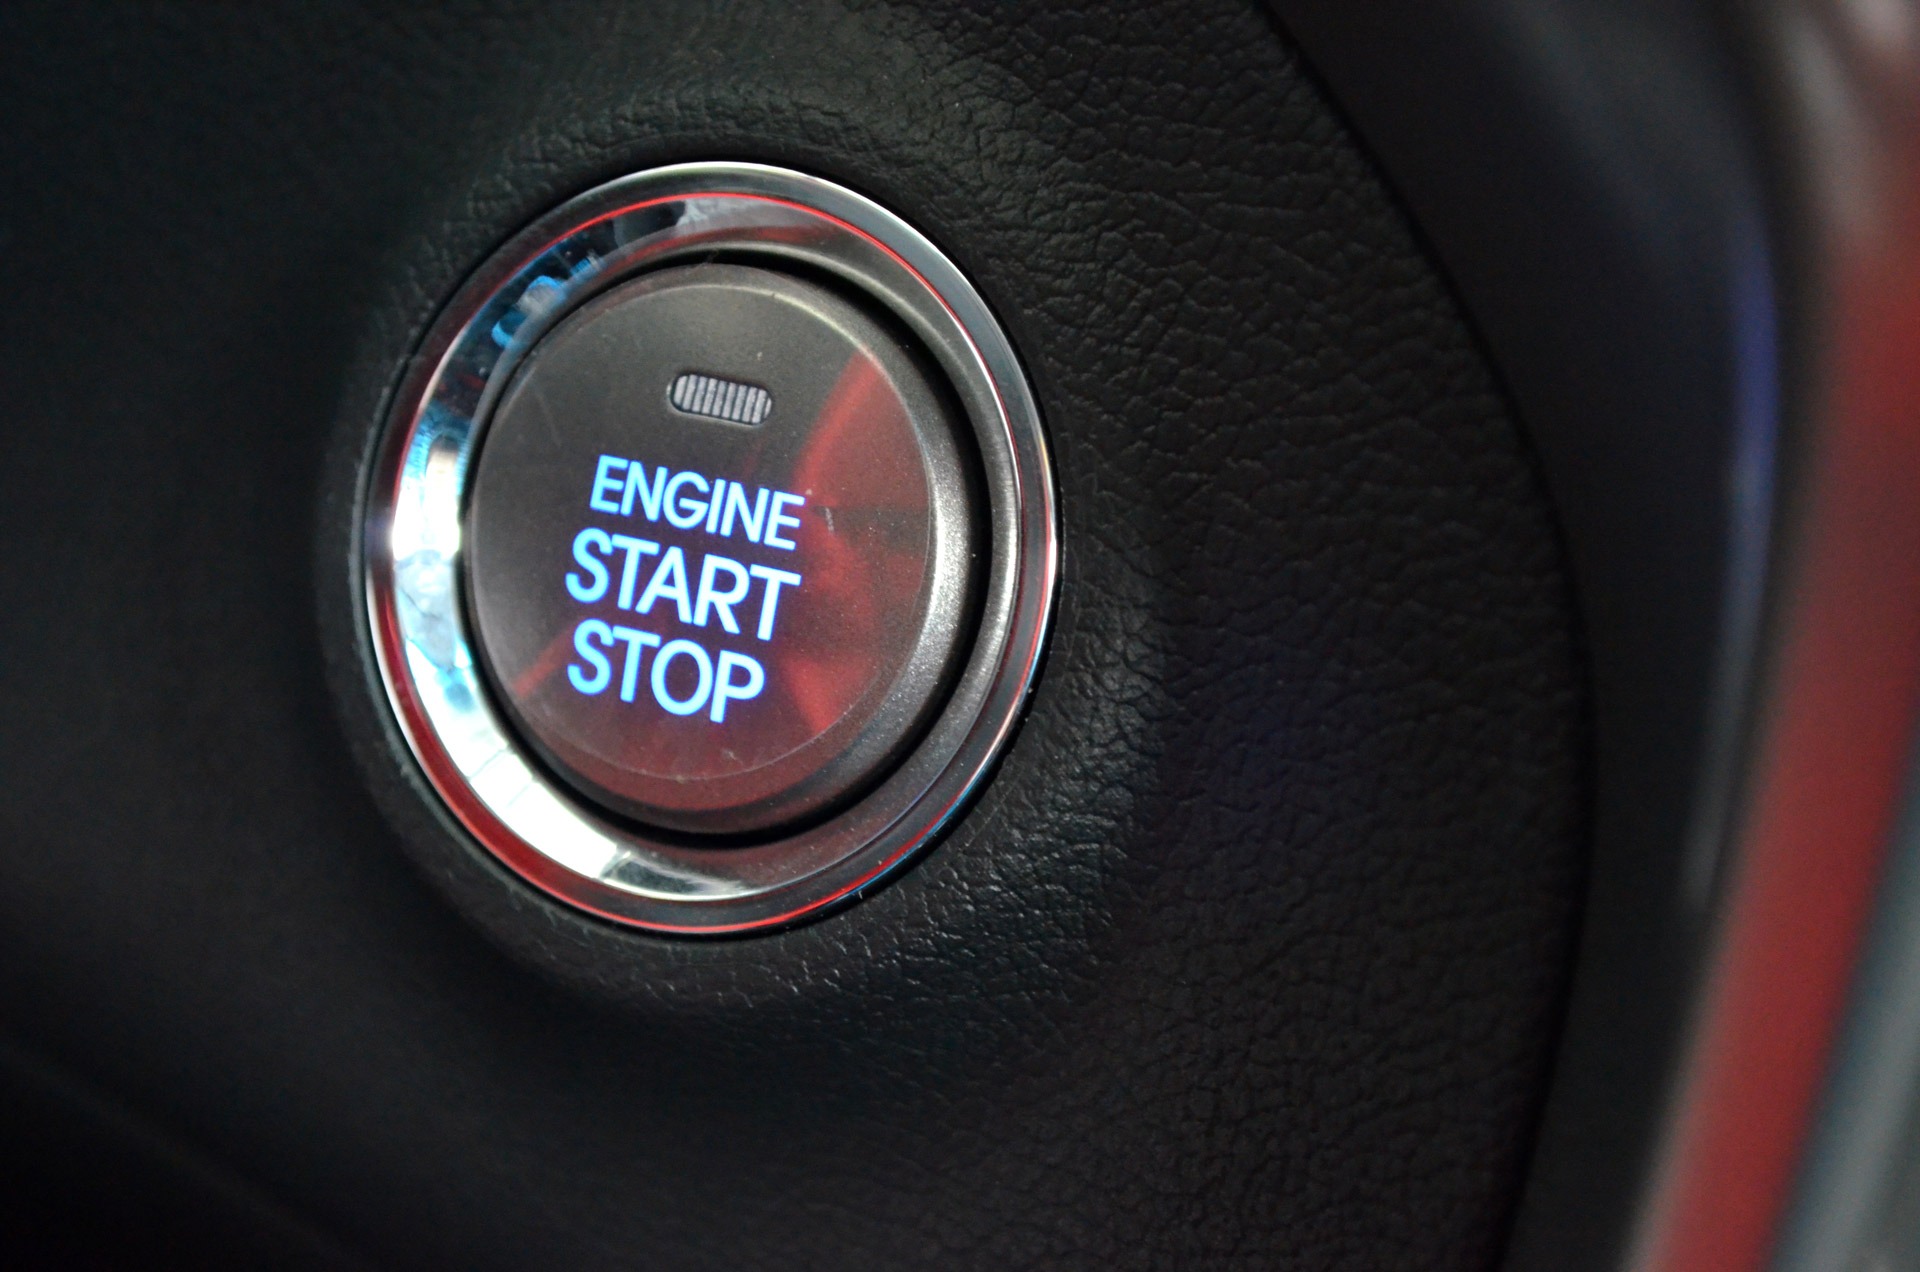 Engine-start-stop-button